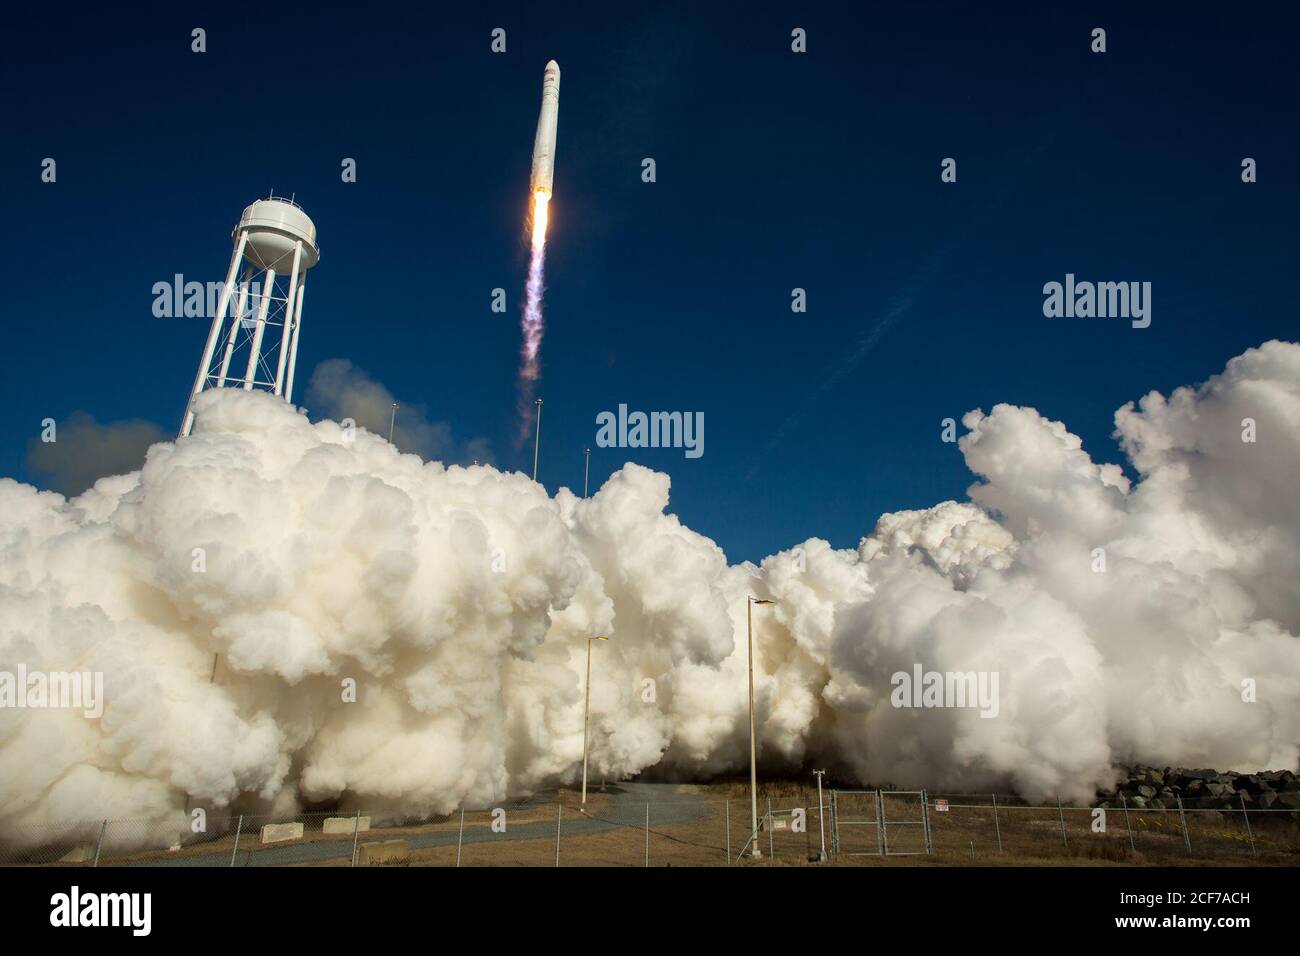 Un cohete Antares de Orbital Sciences Corporation se ve cuando se lanza desde Pad-0A en el Wallops Flight Facility de la NASA, el jueves 9 de enero de 2014, Wallops Island, va. Antares transporta la nave espacial Cygnus en una misión de reabastecimiento de carga a la Estación Espacial Internacional. La misión Orbital-1 es el primer vuelo de entrega de carga contratado por Orbital Sciences a la estación espacial para la NASA. Cygnus está llevando experimentos científicos, provisiones para la tripulación, piezas de repuesto y otros equipos a la estación espacial. Crédito de la foto: (NASA/Bill Ingalls) Foto de stock